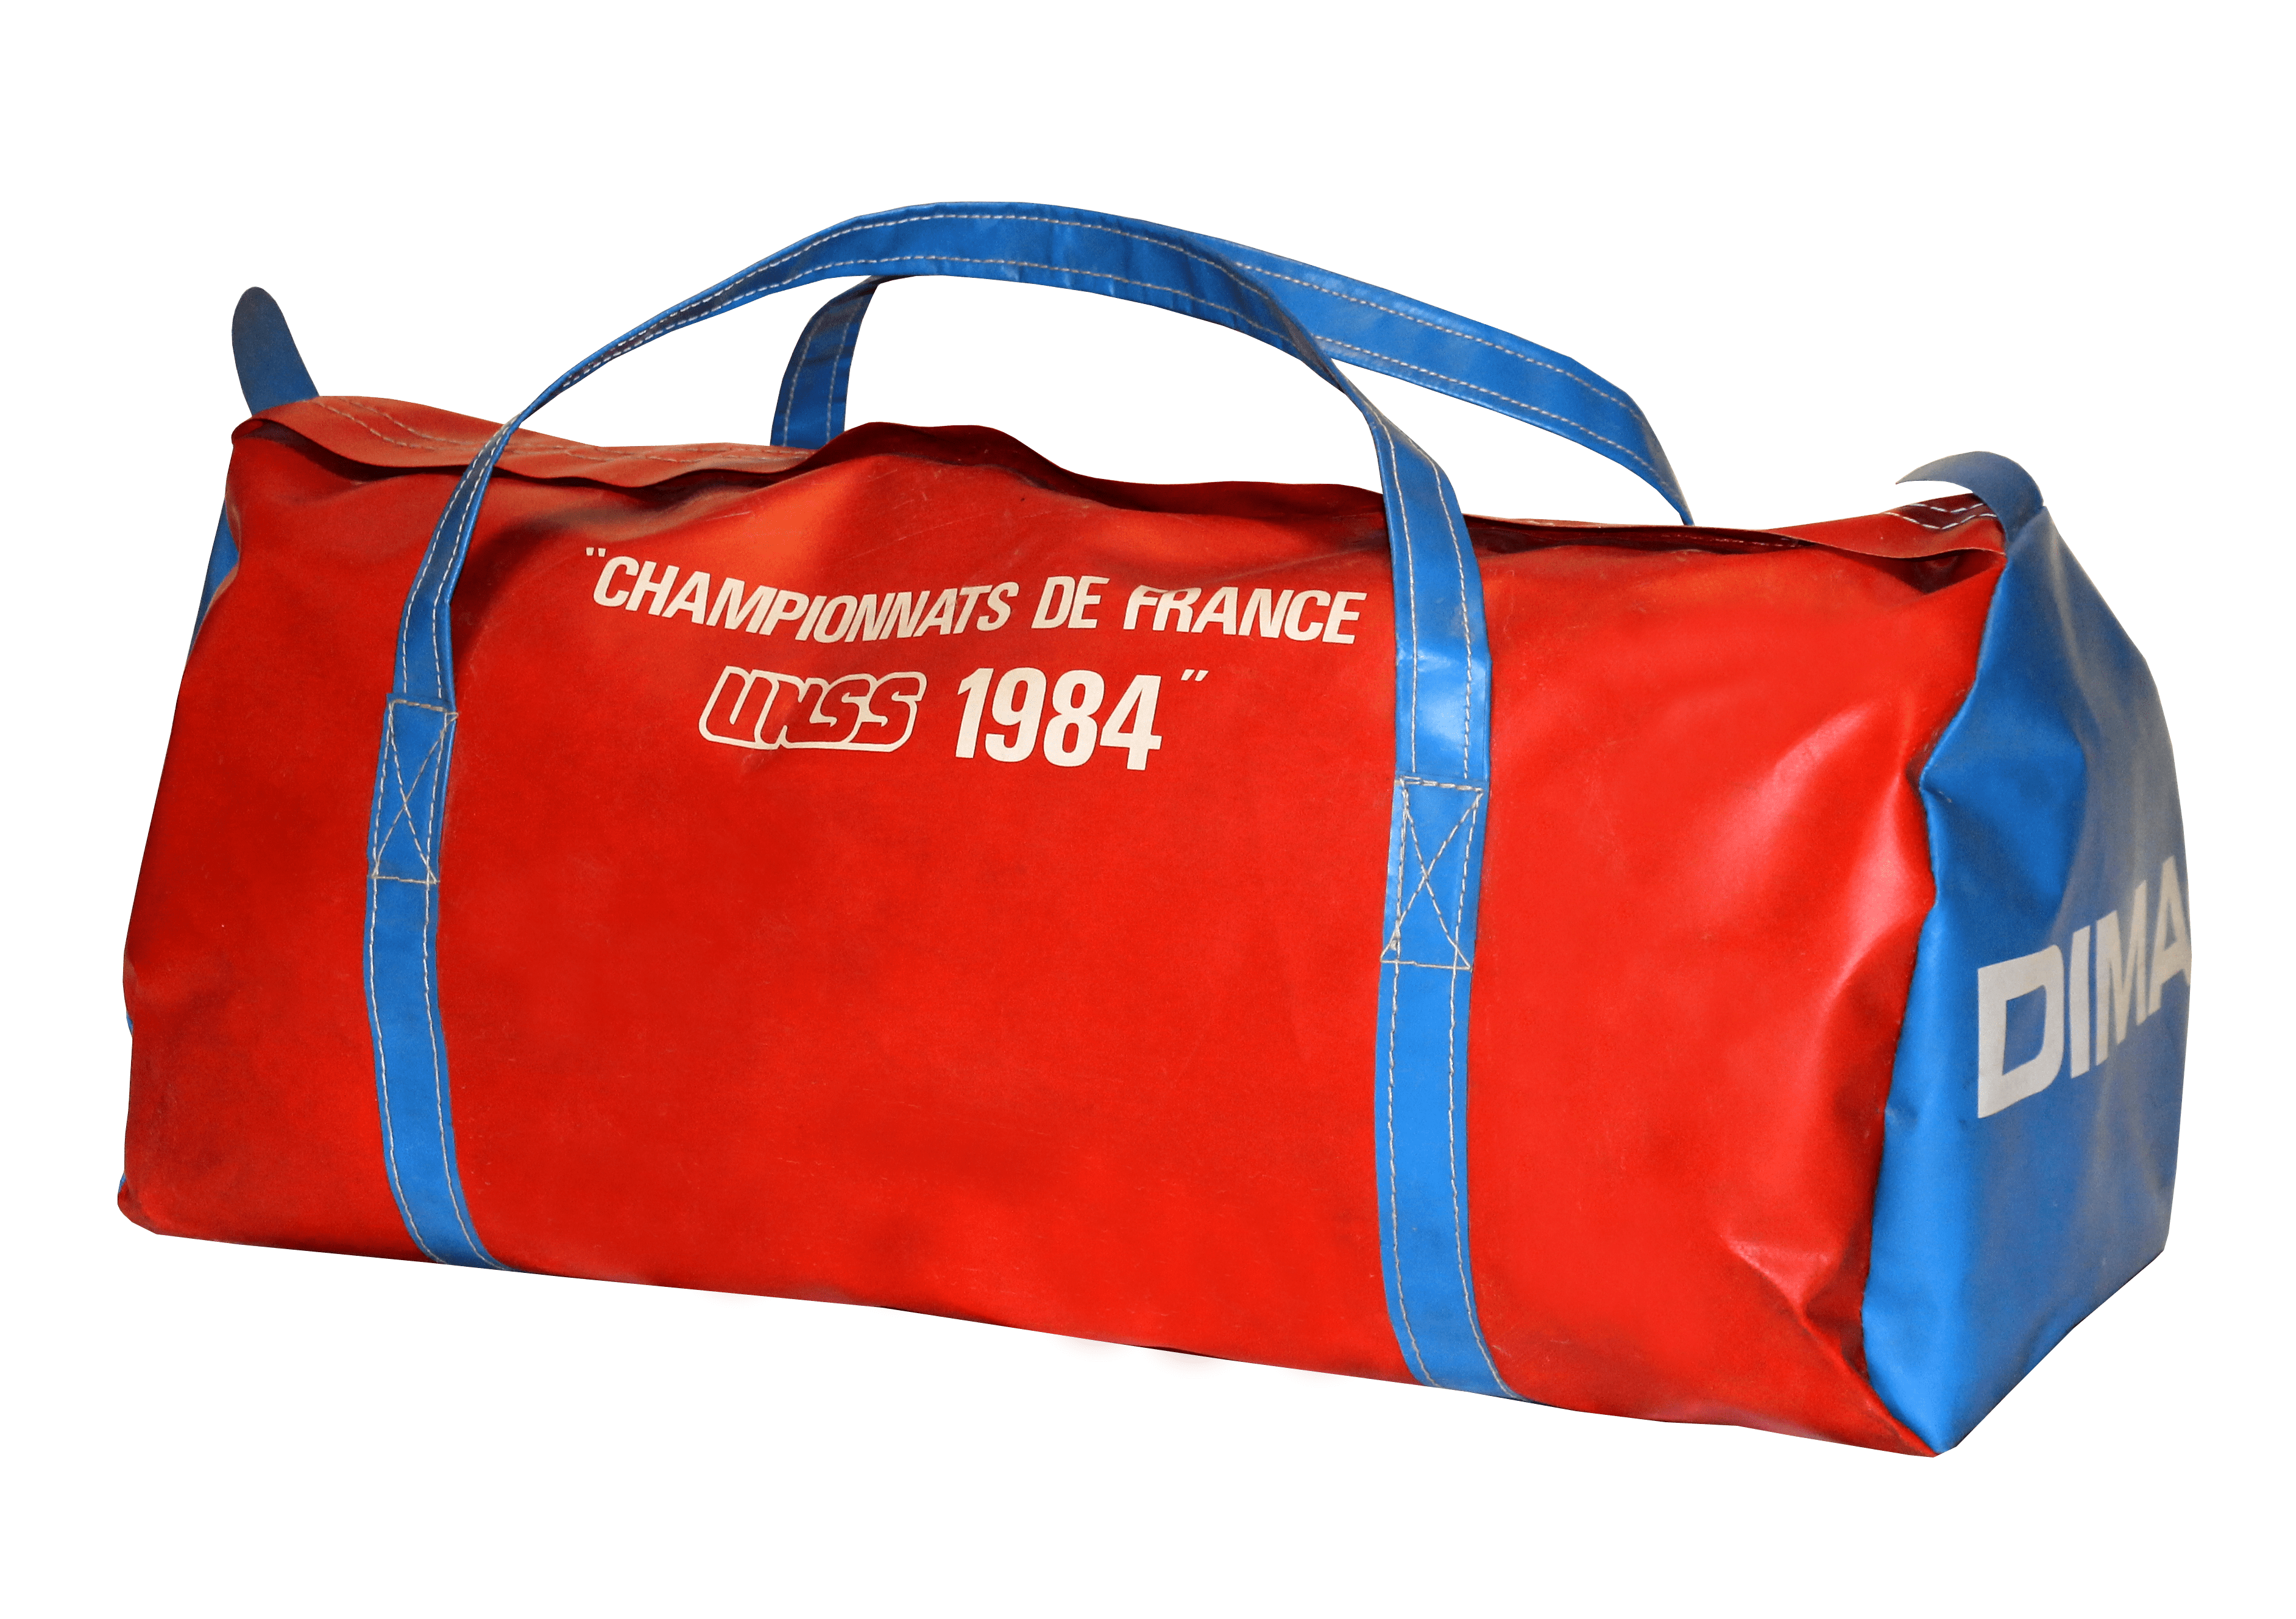 Le sac Championnat de France UNSS 1984